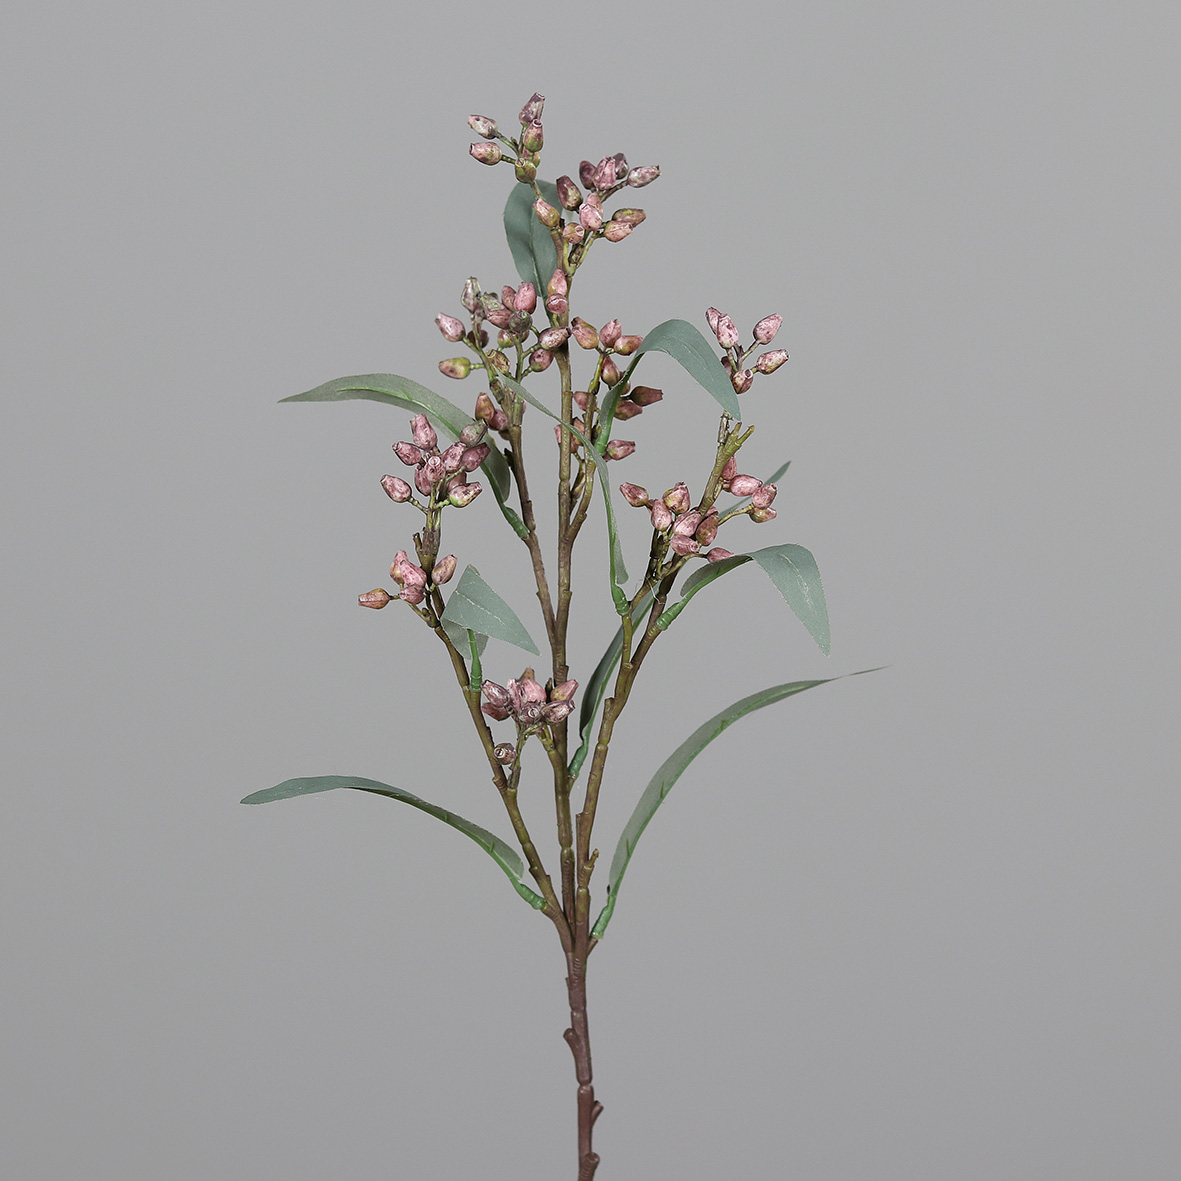 Eukalyptuszweig Blütenknospen 54cm dunkel-rosa DP Kunstblumen künstlicher Eukalyptus Zweige Blumen